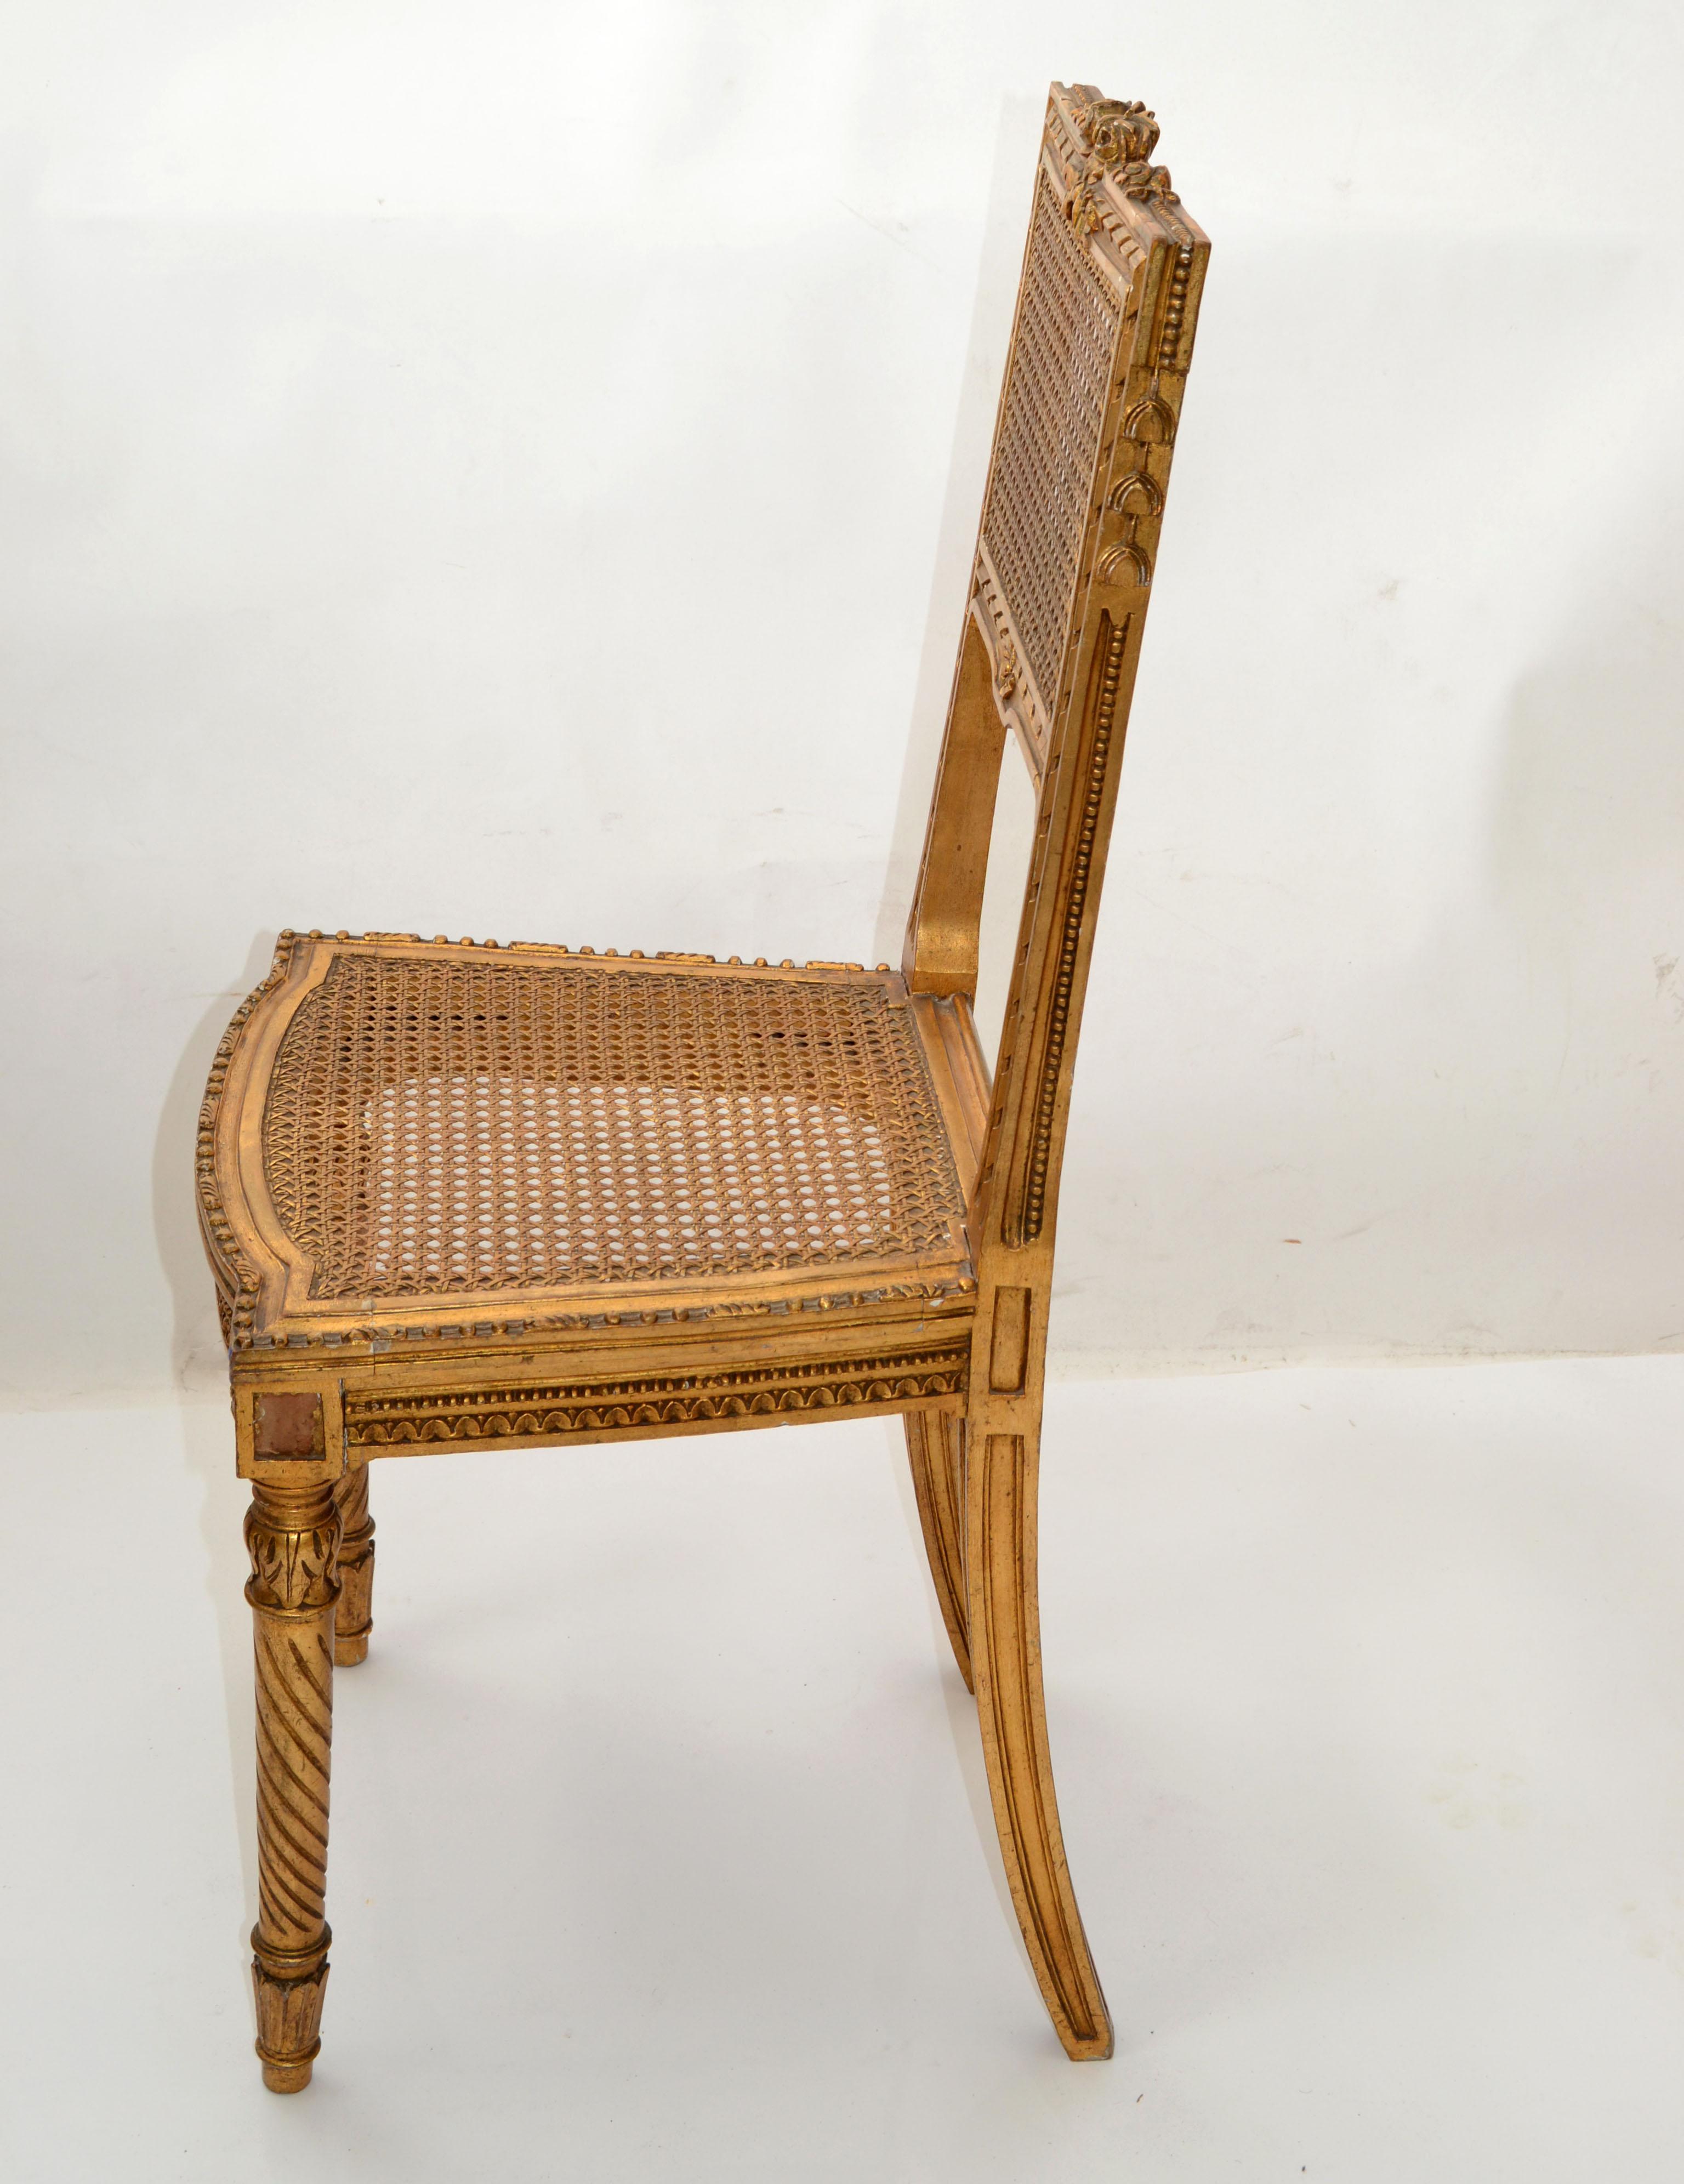 Wir bieten einen handgeschnitzten und handgeflochtenen Eitelkeitsstuhl, einen Beistellstuhl aus vergoldetem Holz mit gedrechselten Vorderbeinen und geschnitzten Hinterbeinen, handgeflochtenem Rohrsitz, Rückenlehne und geschnitzten Rosen und